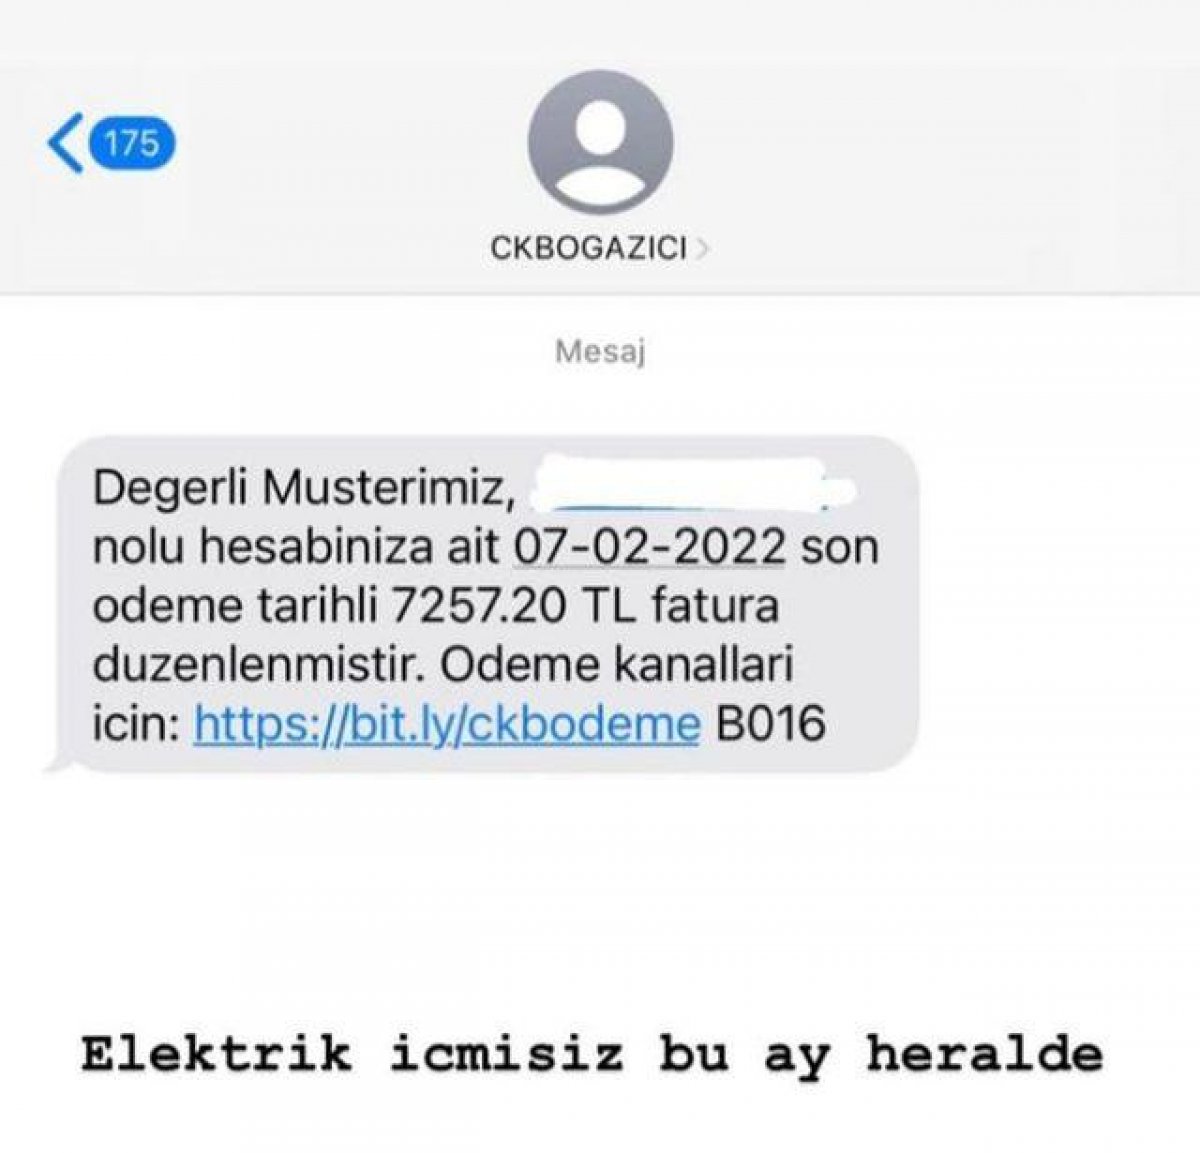 Berfu Yenenler'in elektrik faturası isyanı